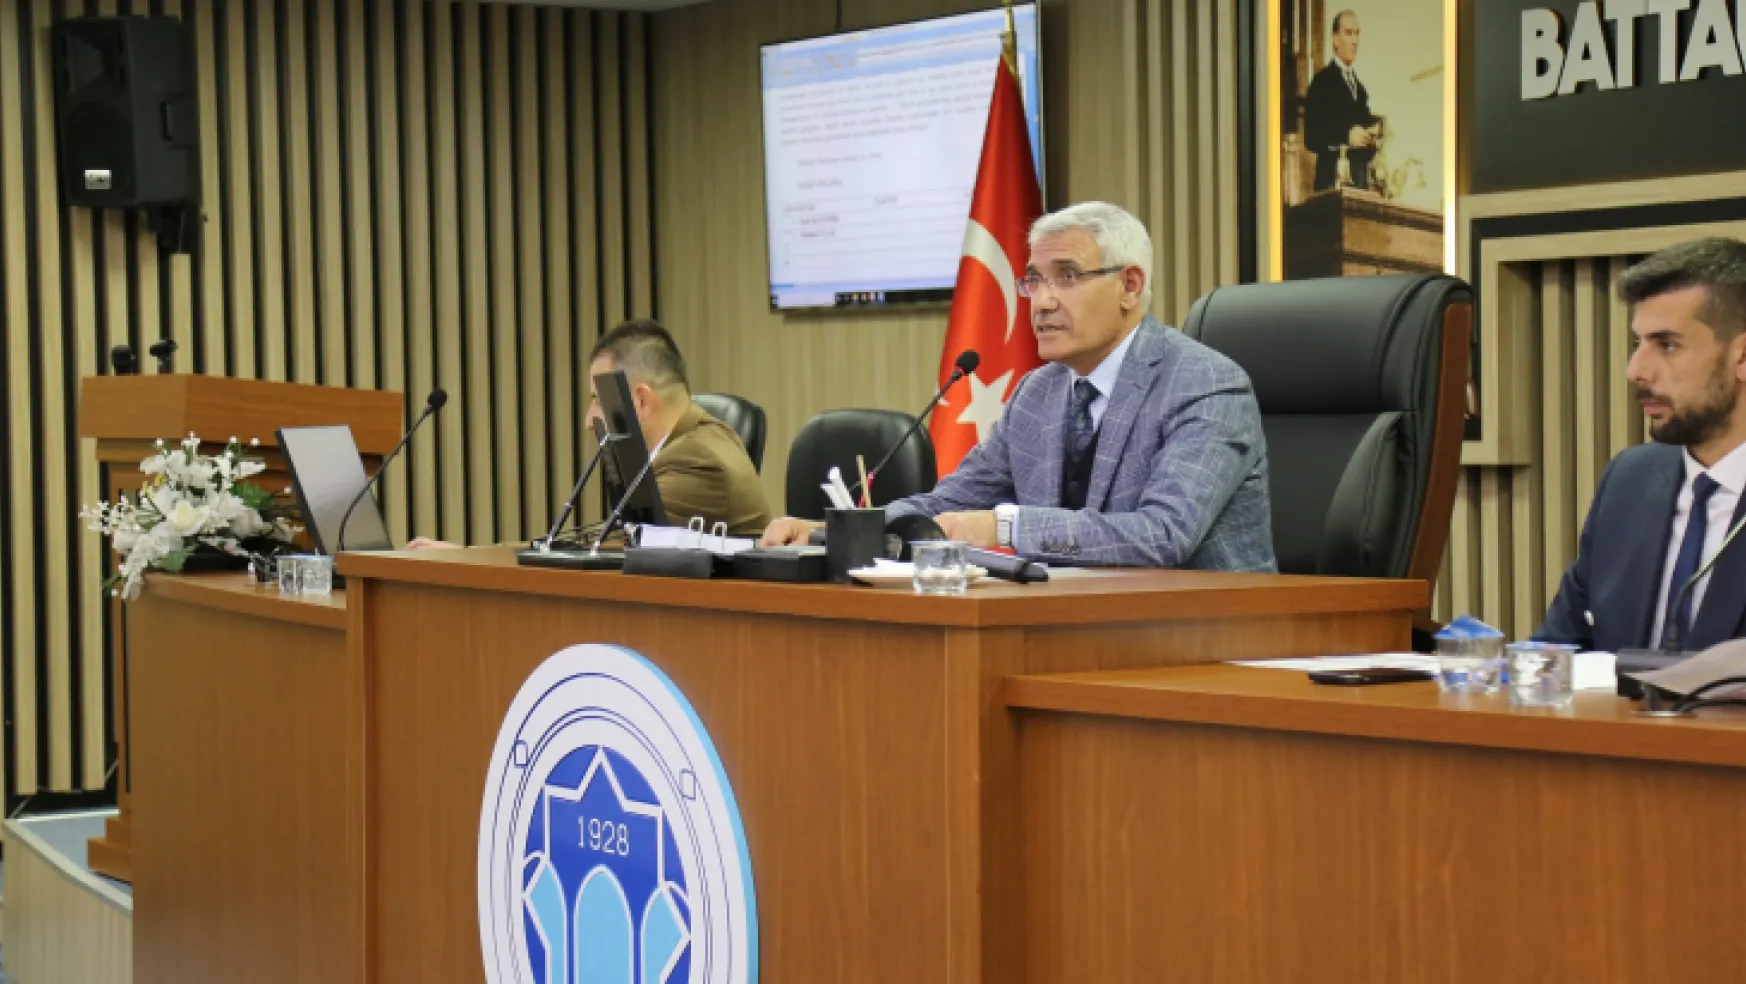 Battalgazi Belediye Meclisi, Ocak Ayı Olağan Toplantısı Tamamlandı